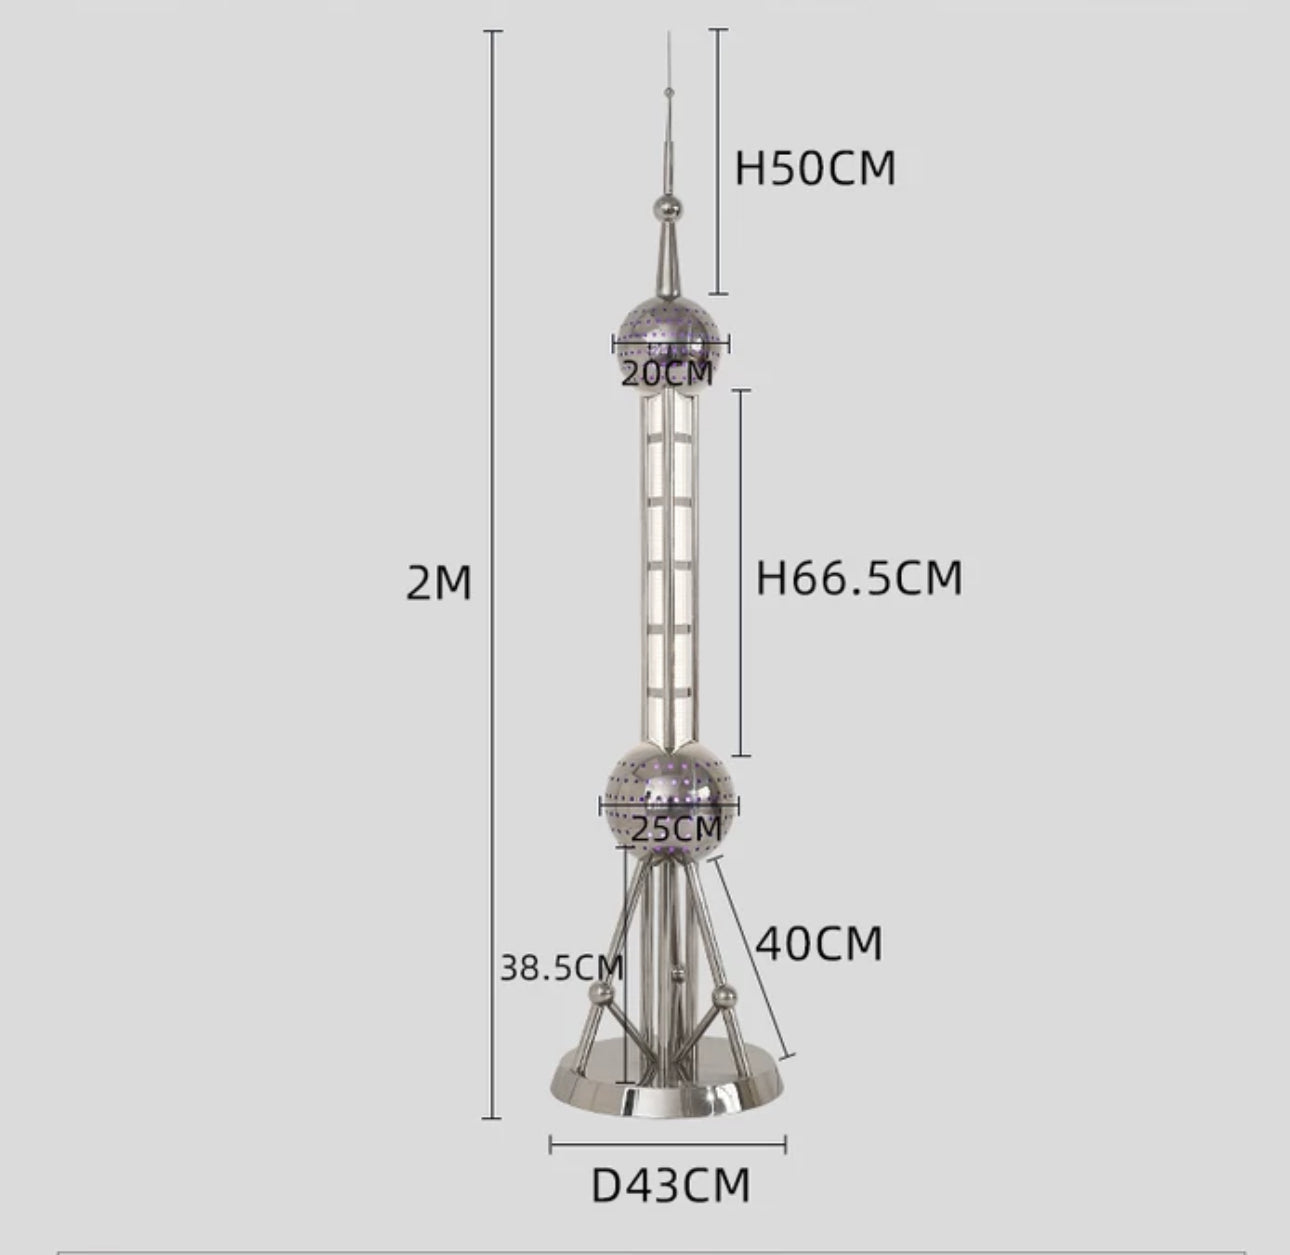 Stainless Steel Led Tower Lamp - 200cm Tall Sleek Modern Design - Floor Lamps